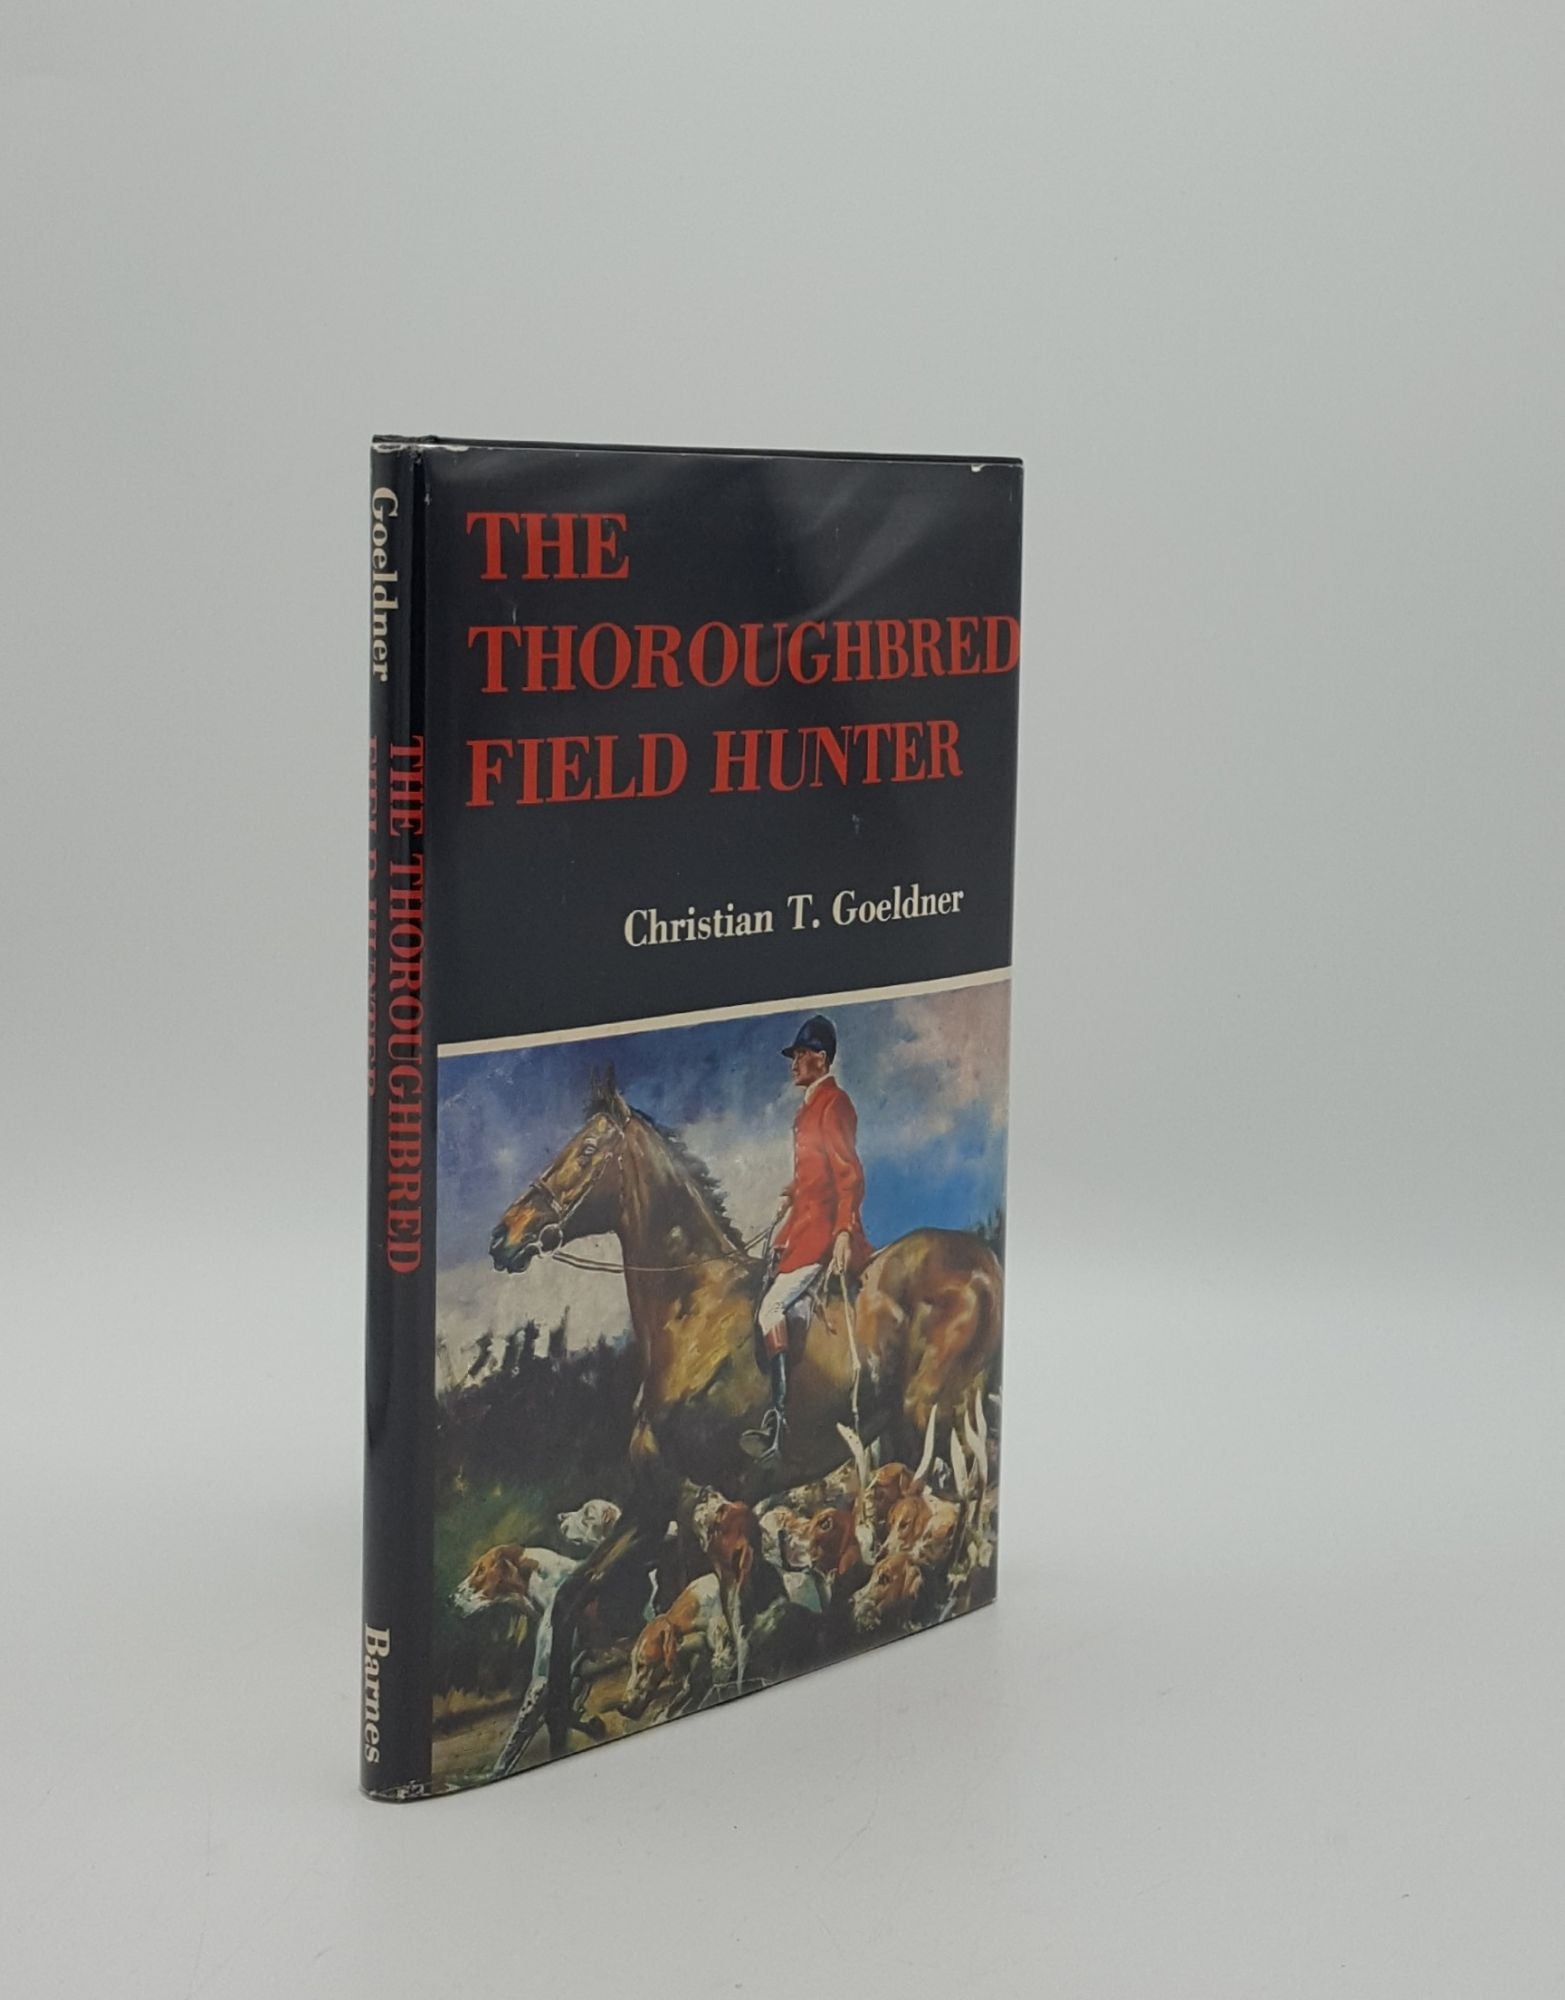 GOELDNER Christian T. - The Thoroughbred Field Hunter